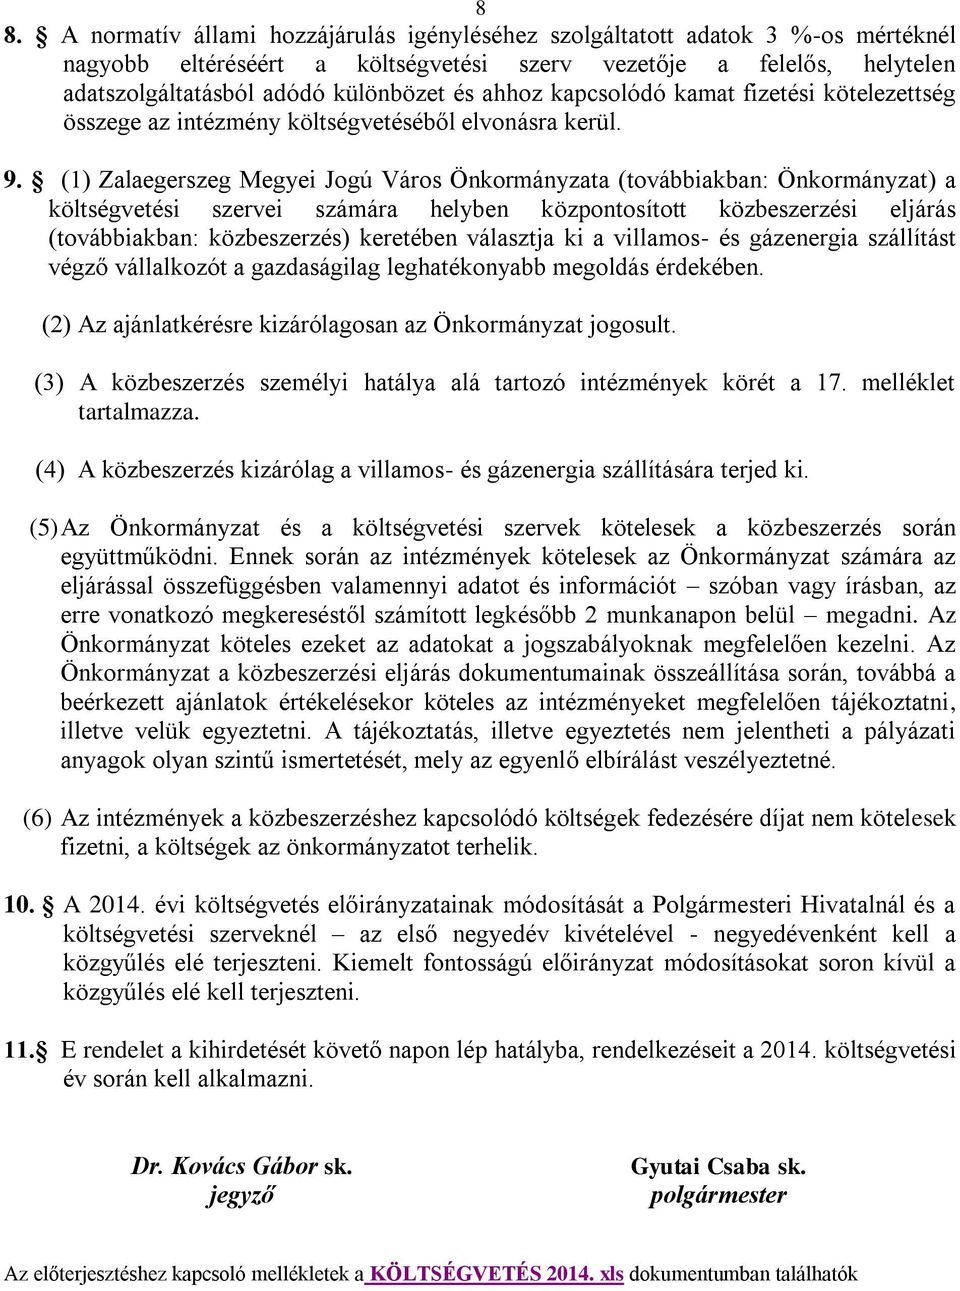 (1) Zalaegerszeg Megyei Jogú Város Önkormányzata (továbbiakban: Önkormányzat) a költségvetési szervei számára helyben központosított közbeszerzési eljárás (továbbiakban: közbeszerzés) keretében